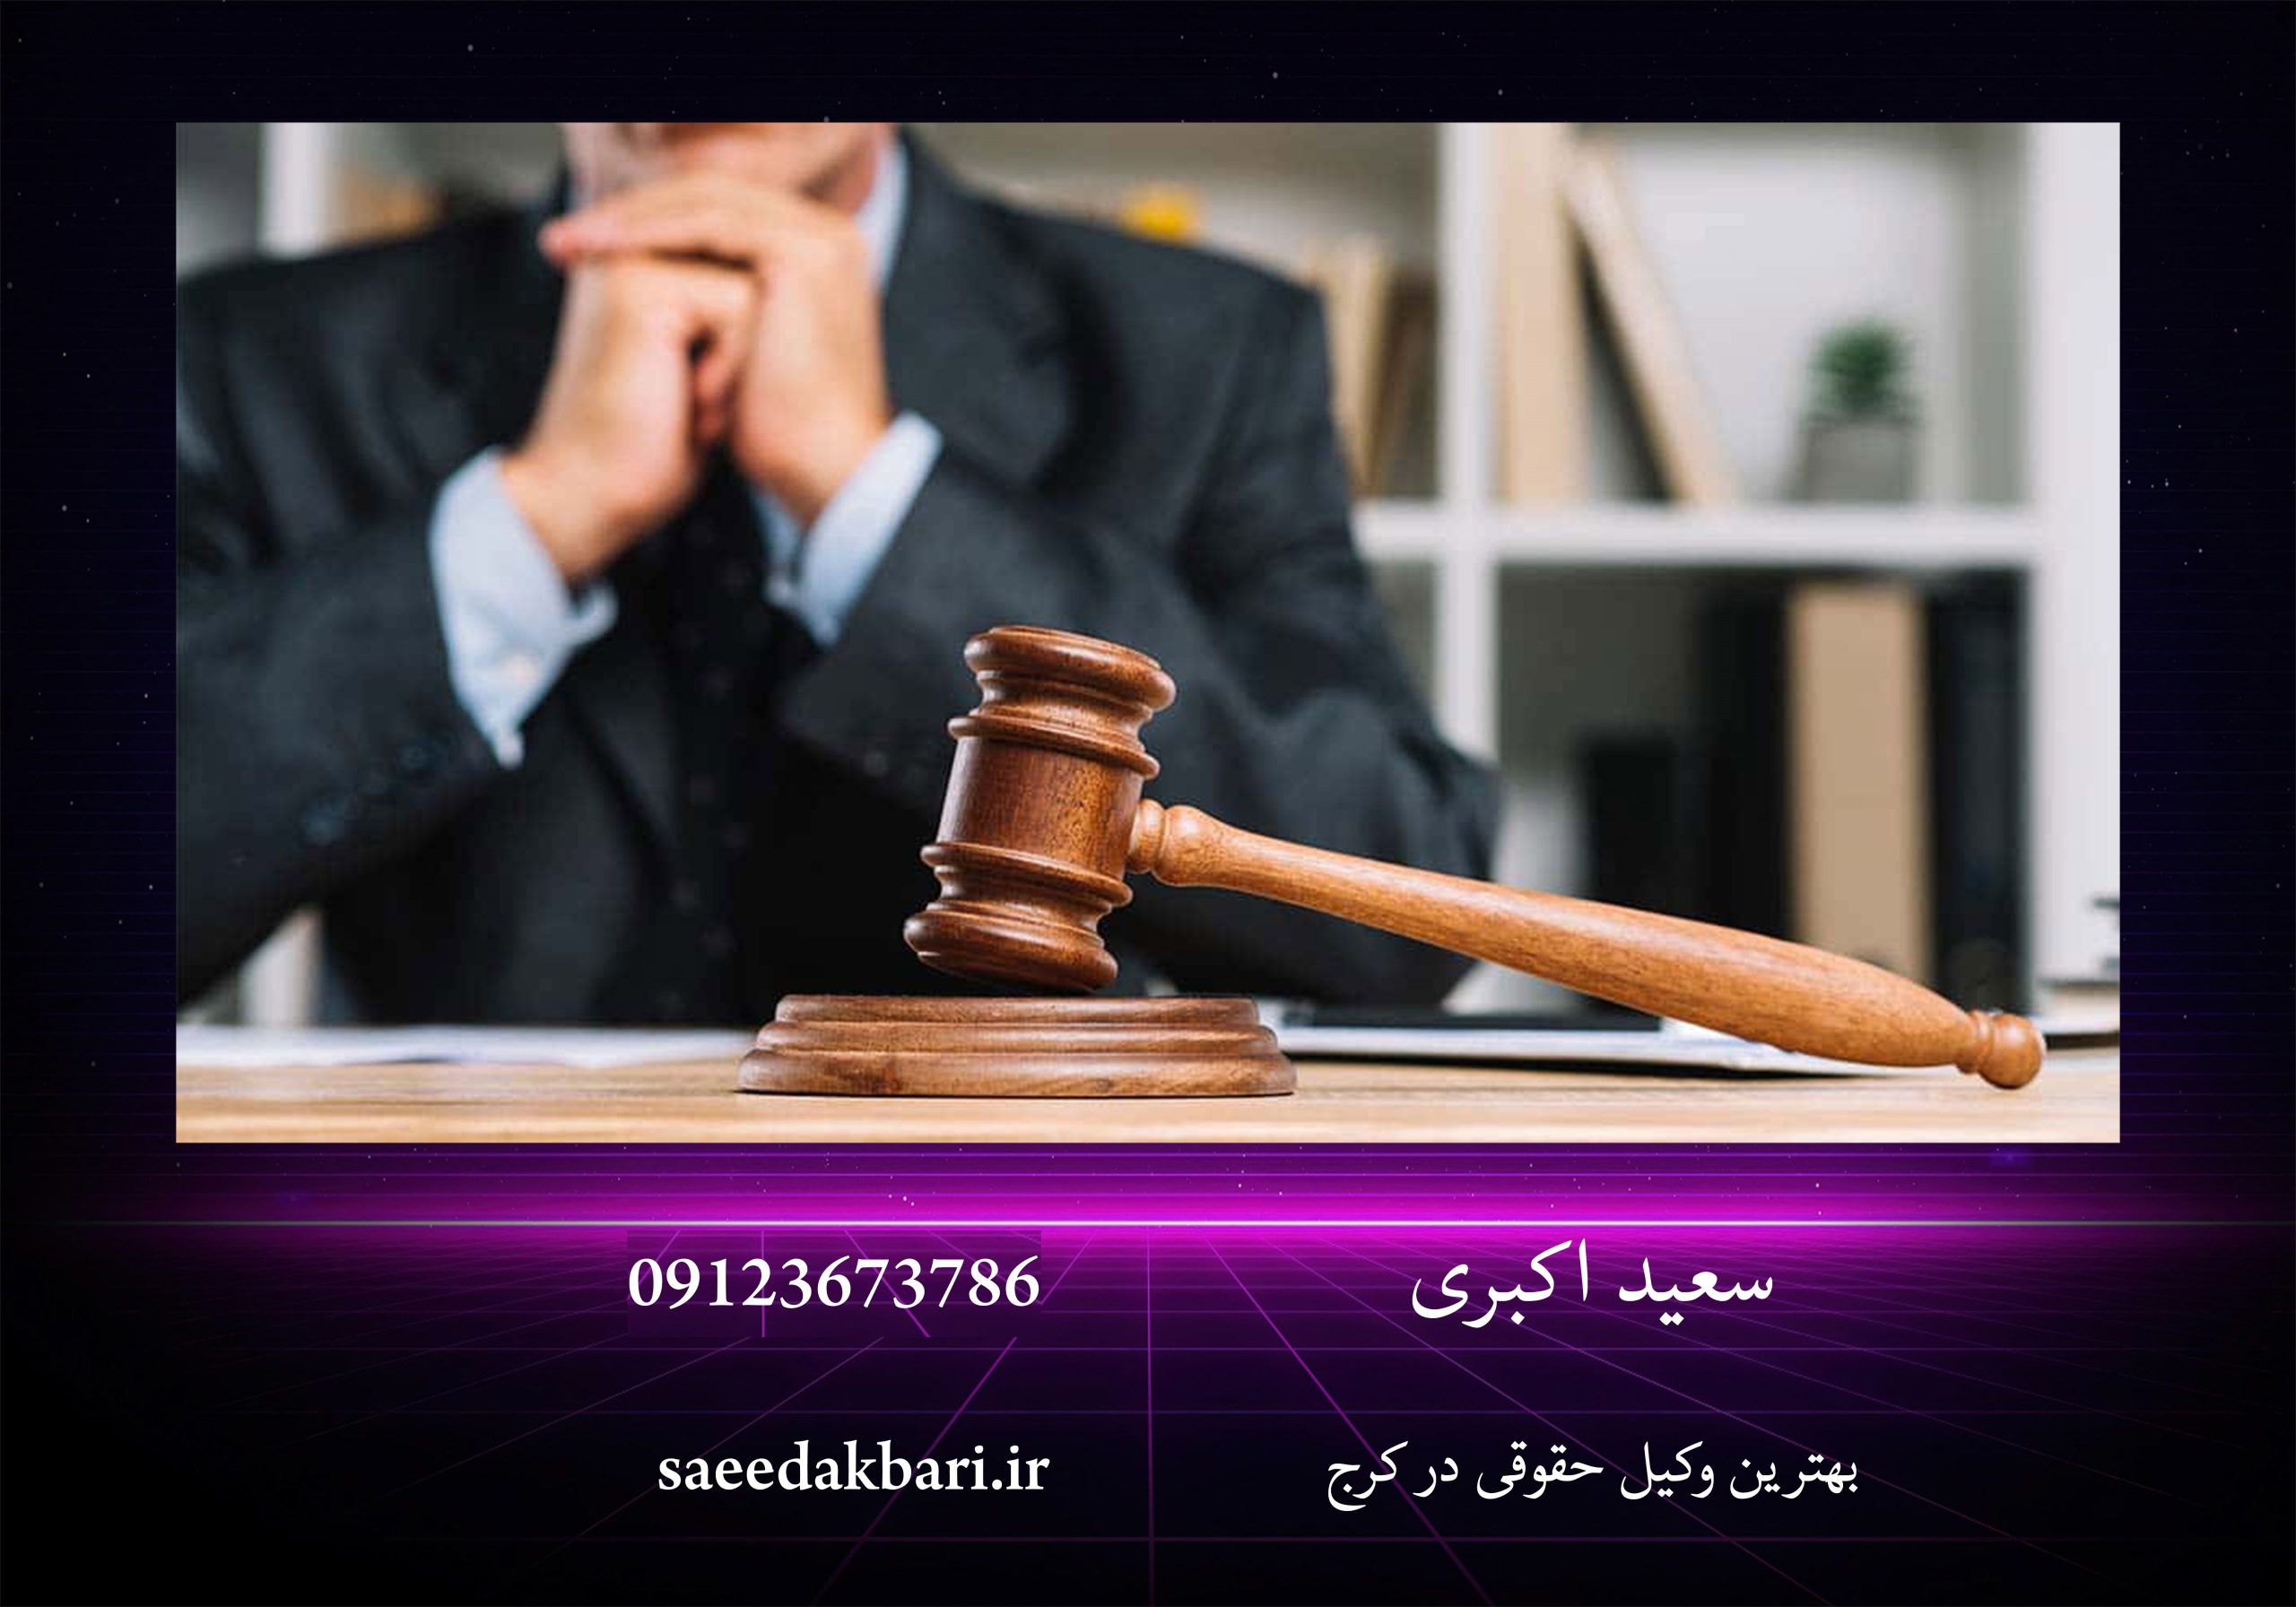 بهترین وکیل حقوقی در کرج | وکیل دادگستری | سعید اکبری